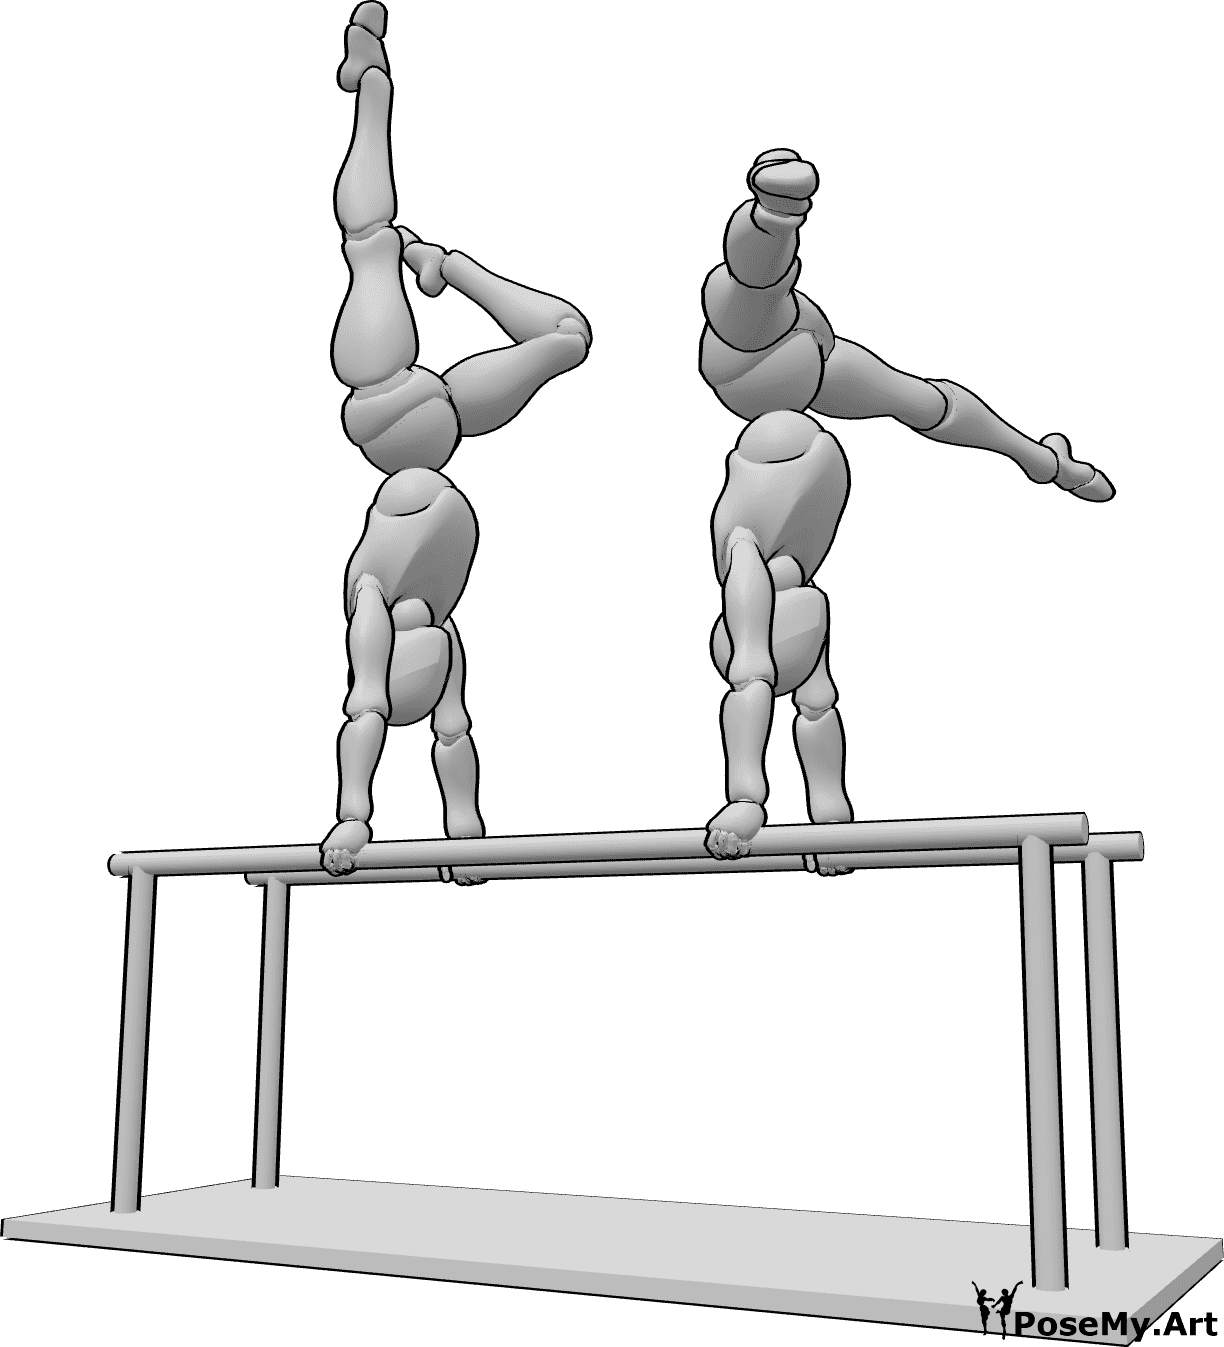 Referência de poses- Duas mulheres em pose de ginástica - Duas mulheres estão a fazer ginástica nas barras paralelas, levantando as mãos e as pernas